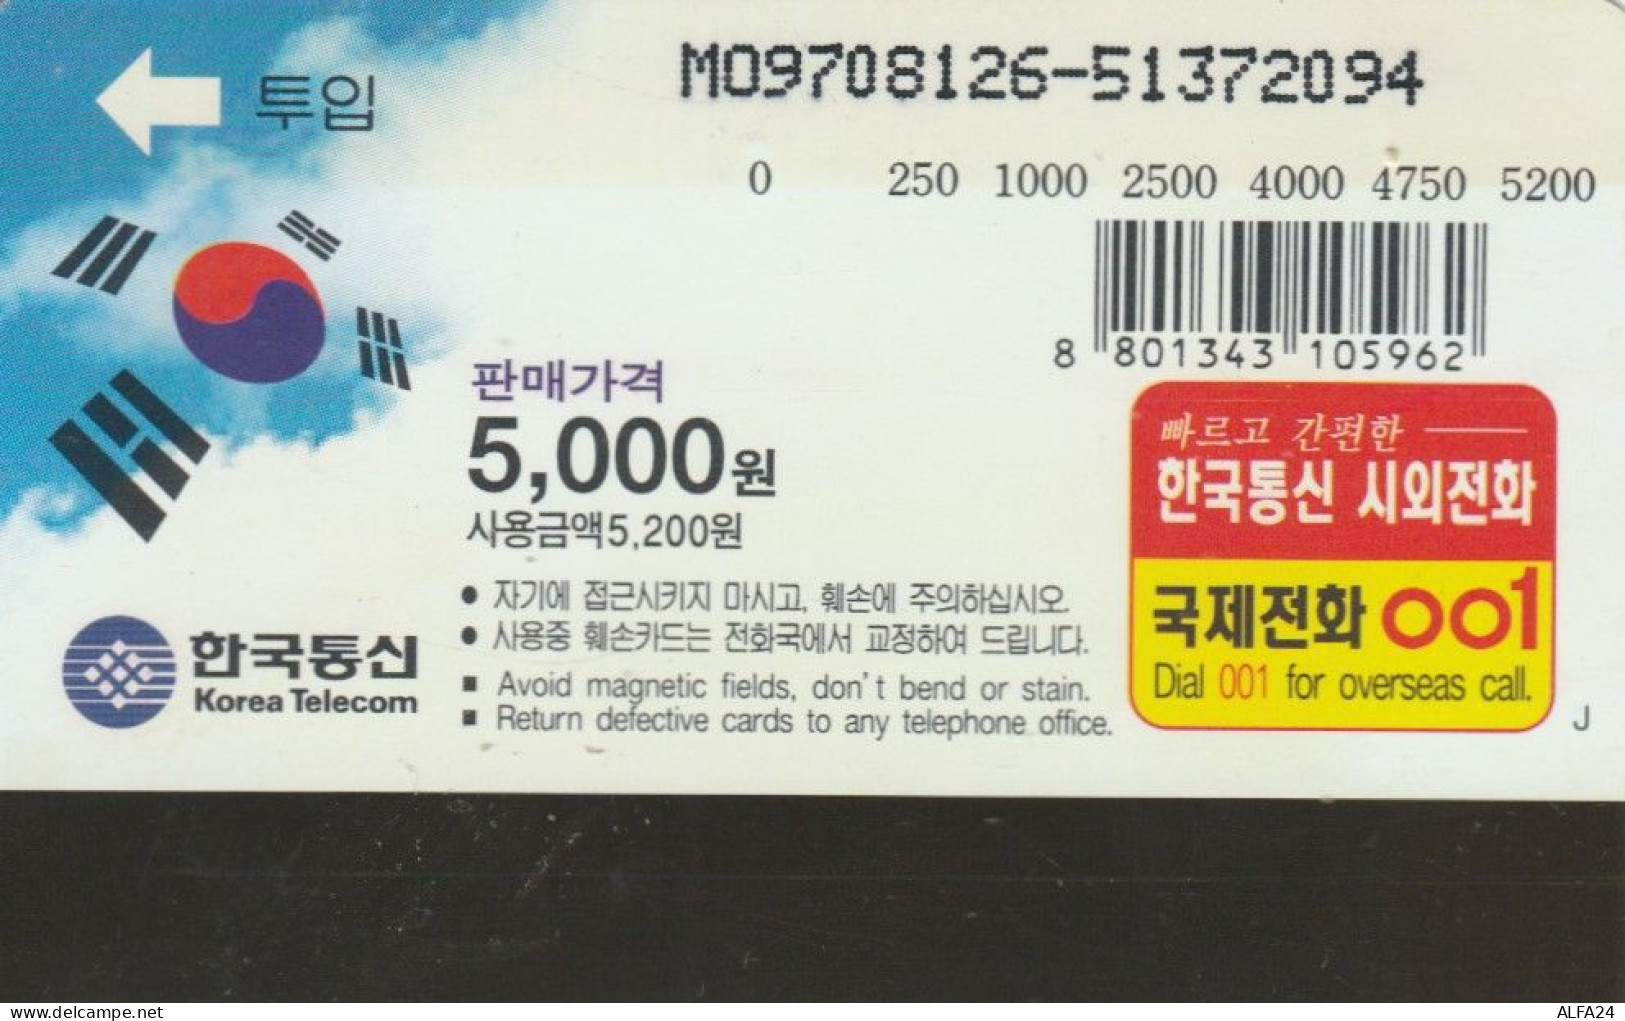 PHONE CARD COREA SUD (E86.1.5 - Corée Du Sud